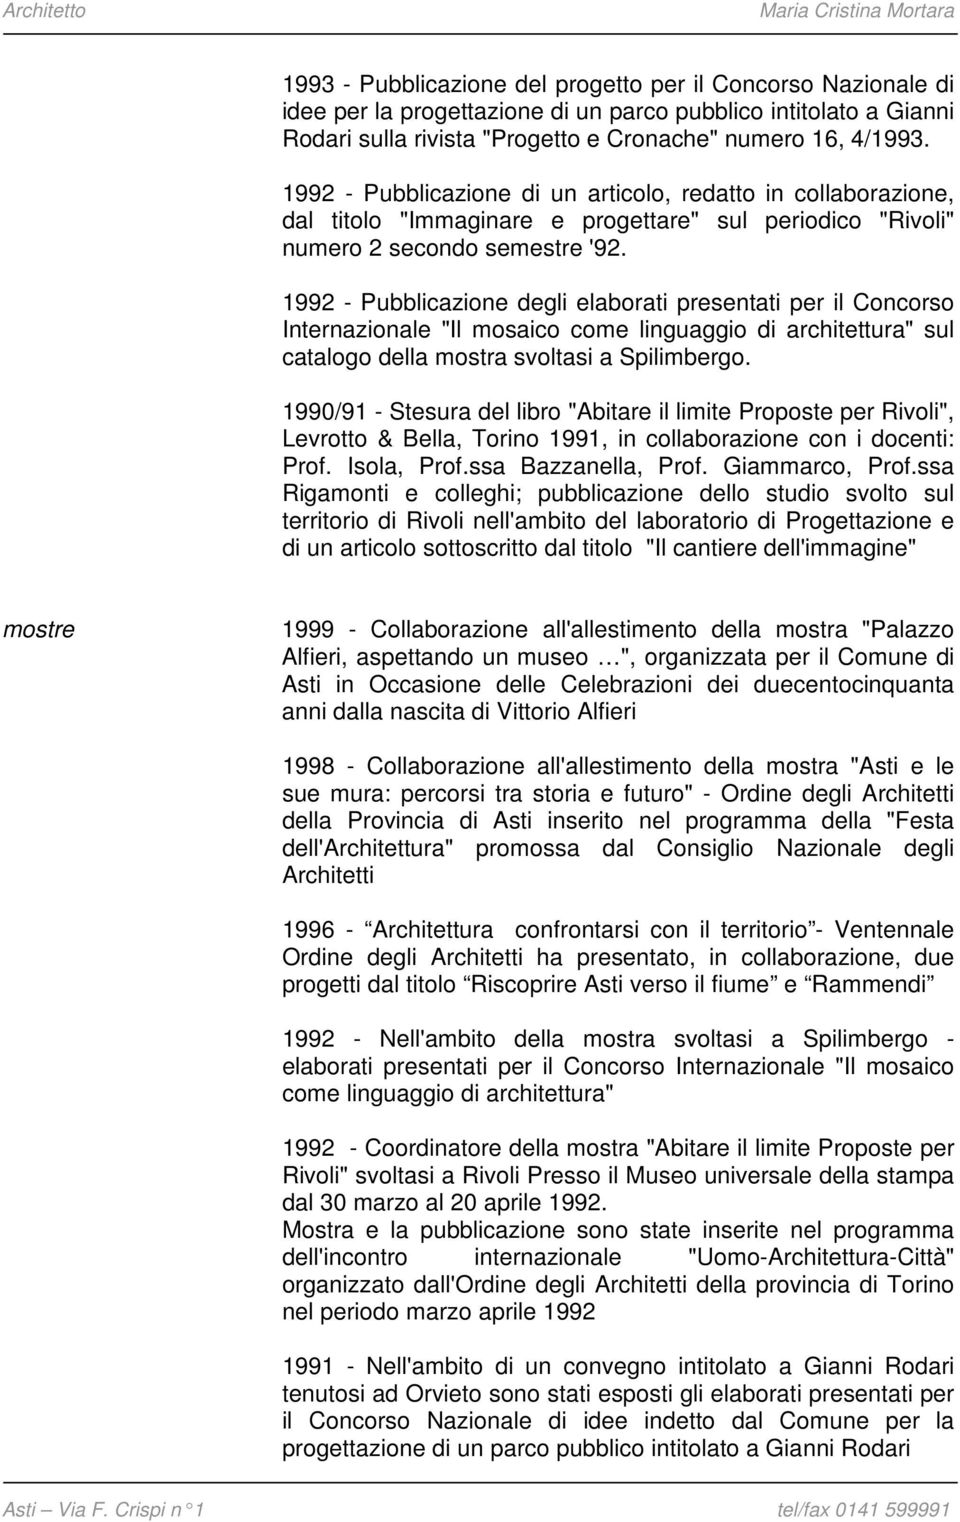 1992 - Pubblicazione degli elaborati presentati per il Concorso Internazionale "Il mosaico come linguaggio di architettura" sul catalogo della mostra svoltasi a Spilimbergo.